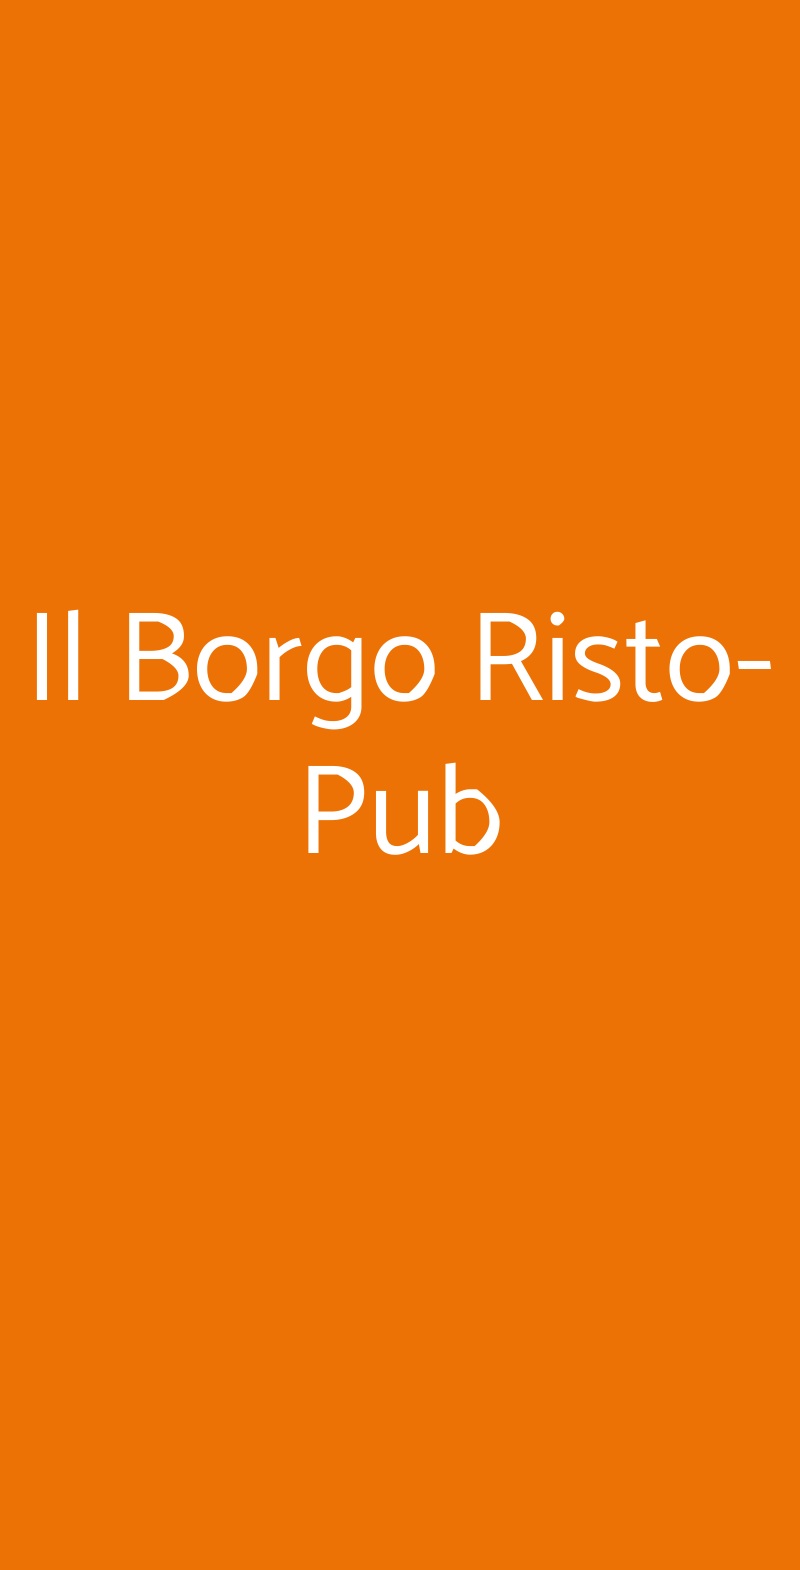 Il Borgo Risto-Pub Milazzo menù 1 pagina